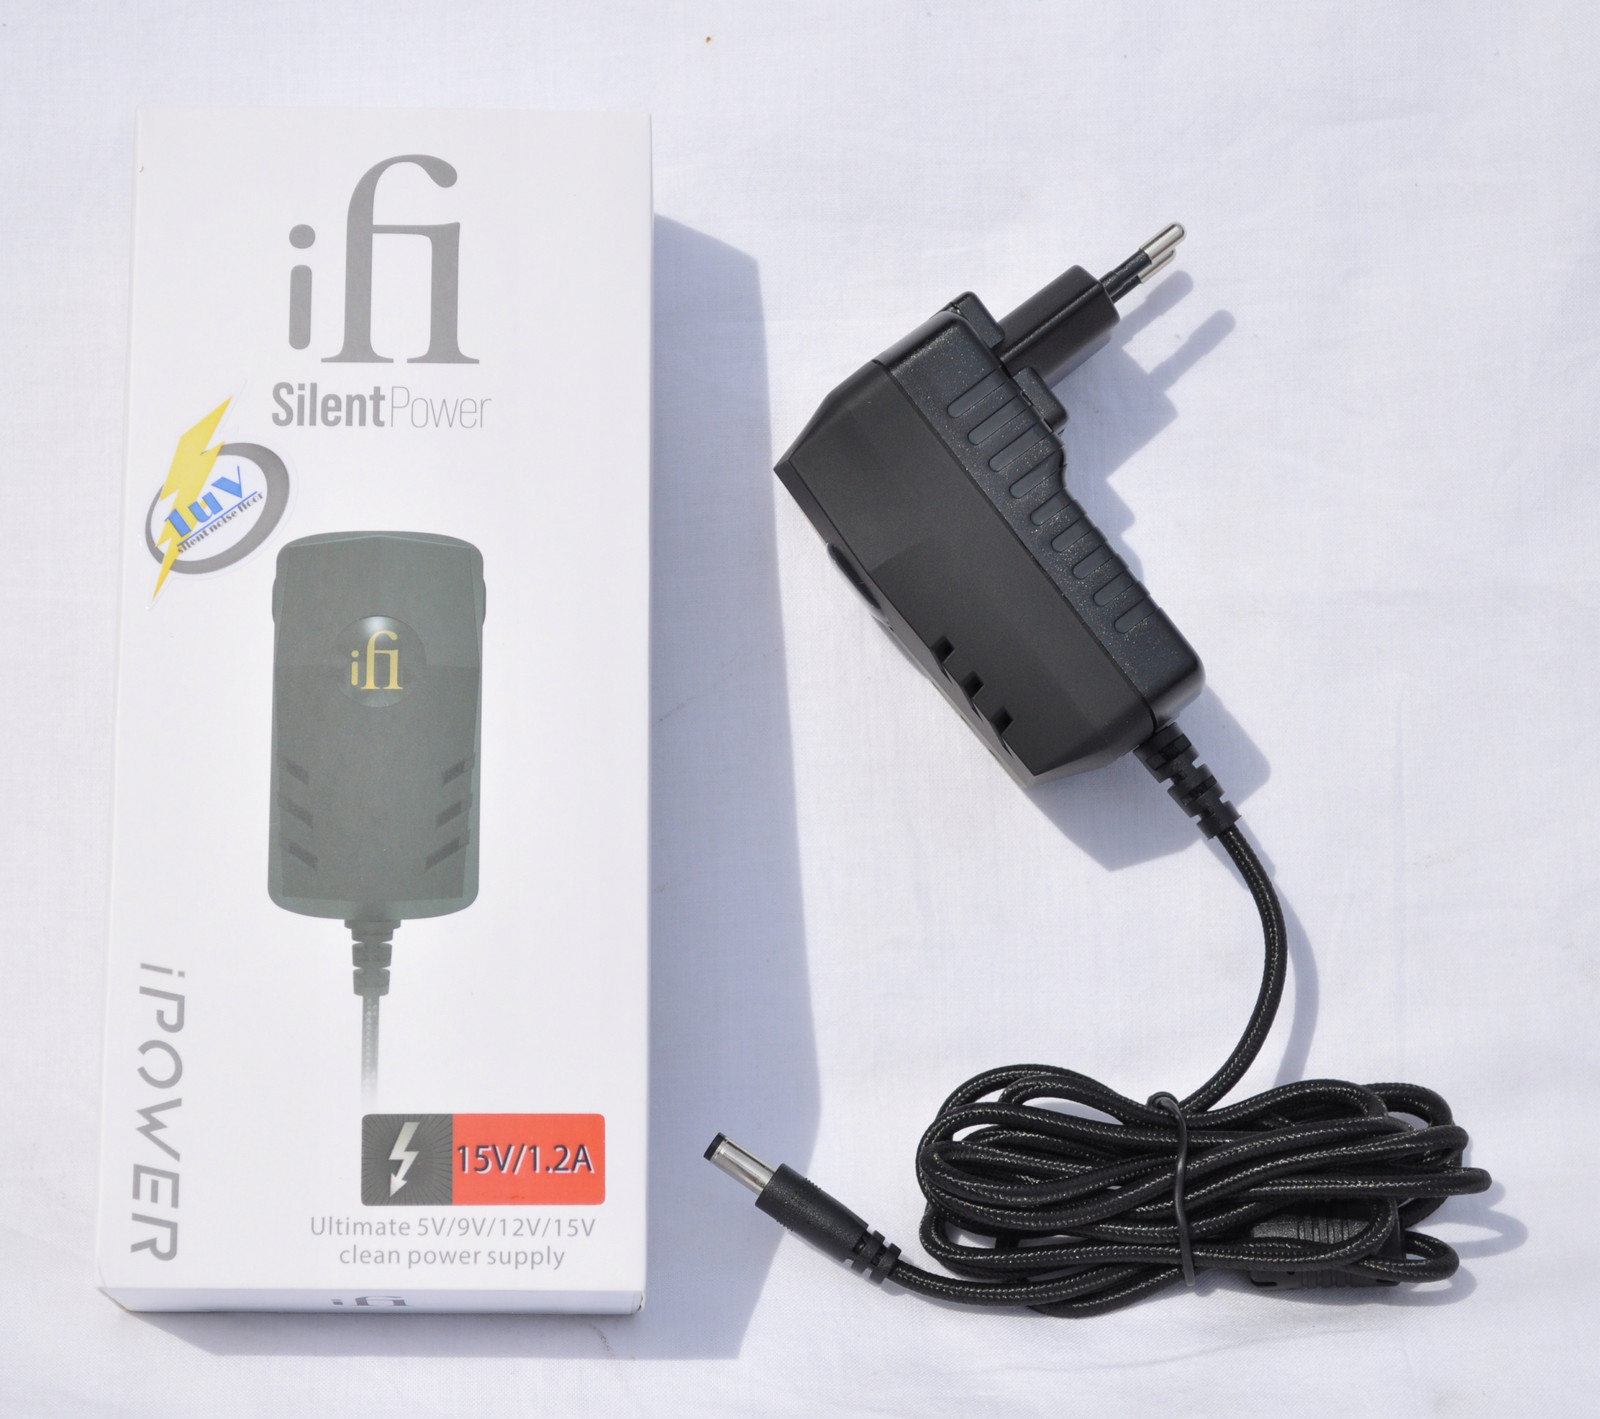 iFi Audio iPower2 15V/1.2A Eliminace Šumu Upgrade Kvality Signálu A Výkonu